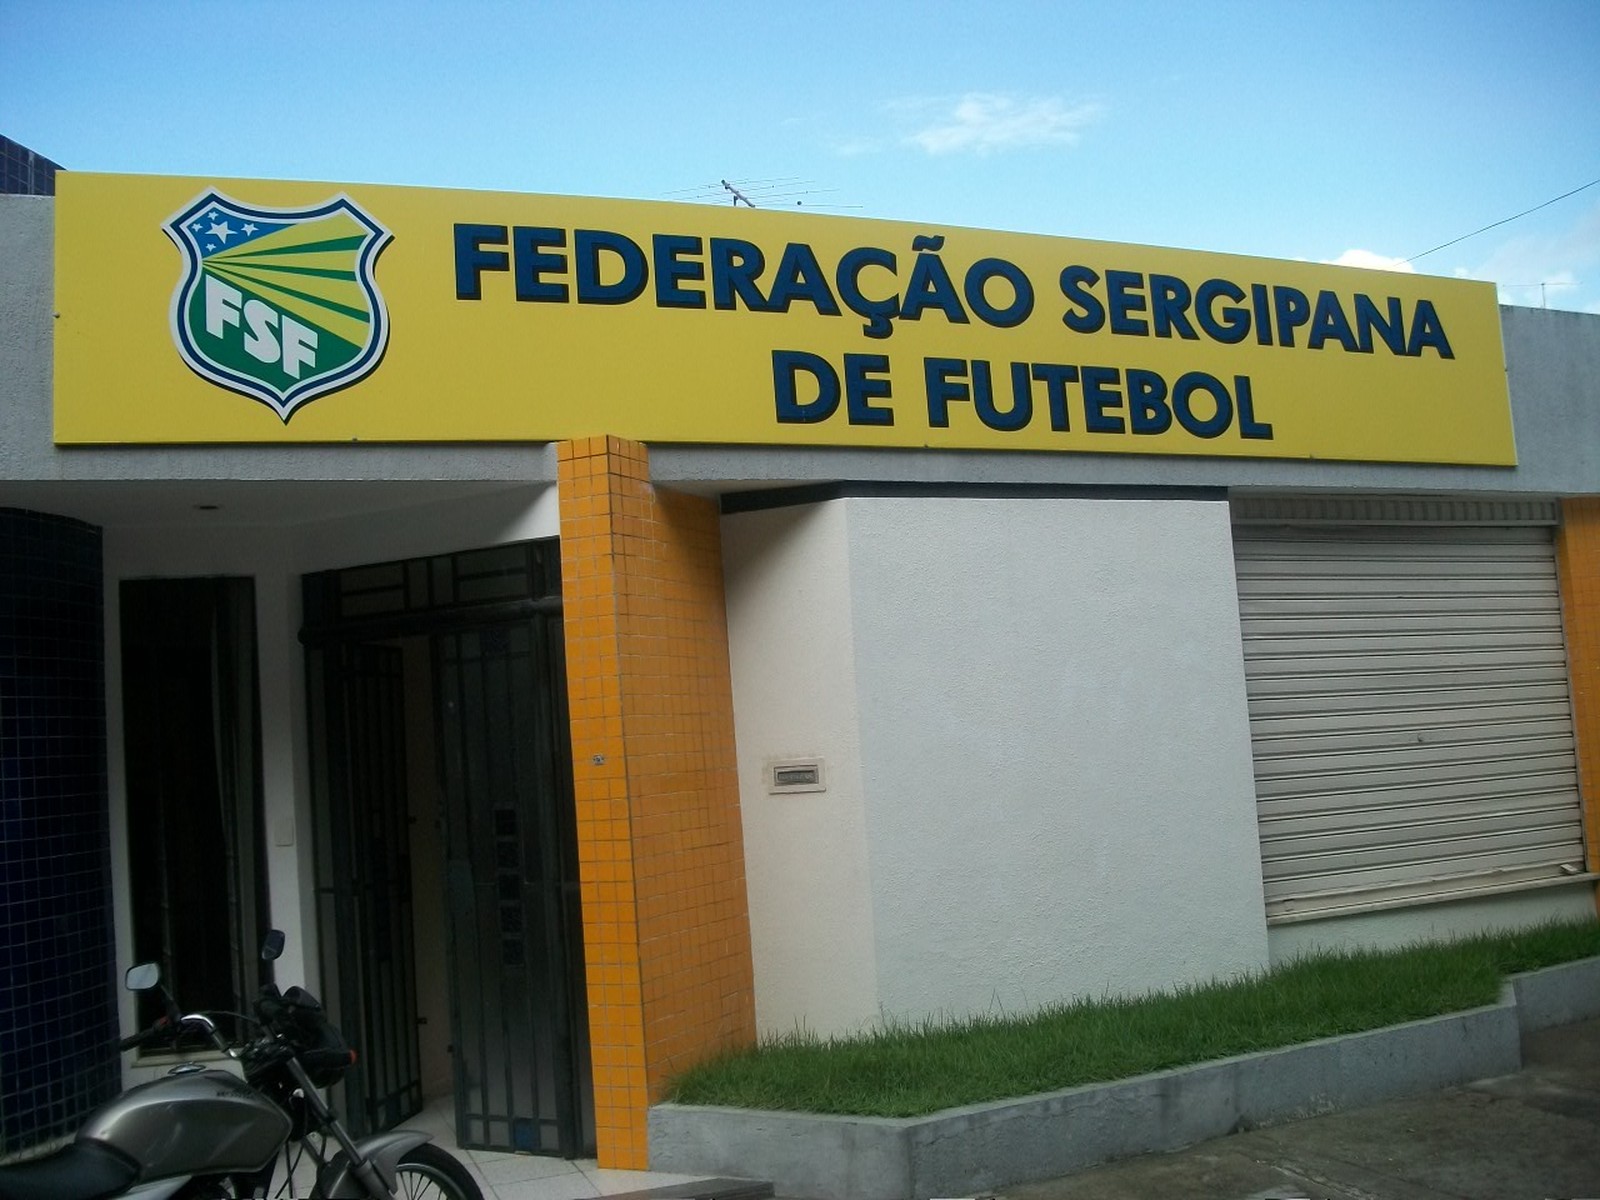 Federação Sergipana de Futebol encaminha denúncia ao TJD-SE (Foto: Barroso Guimarães)